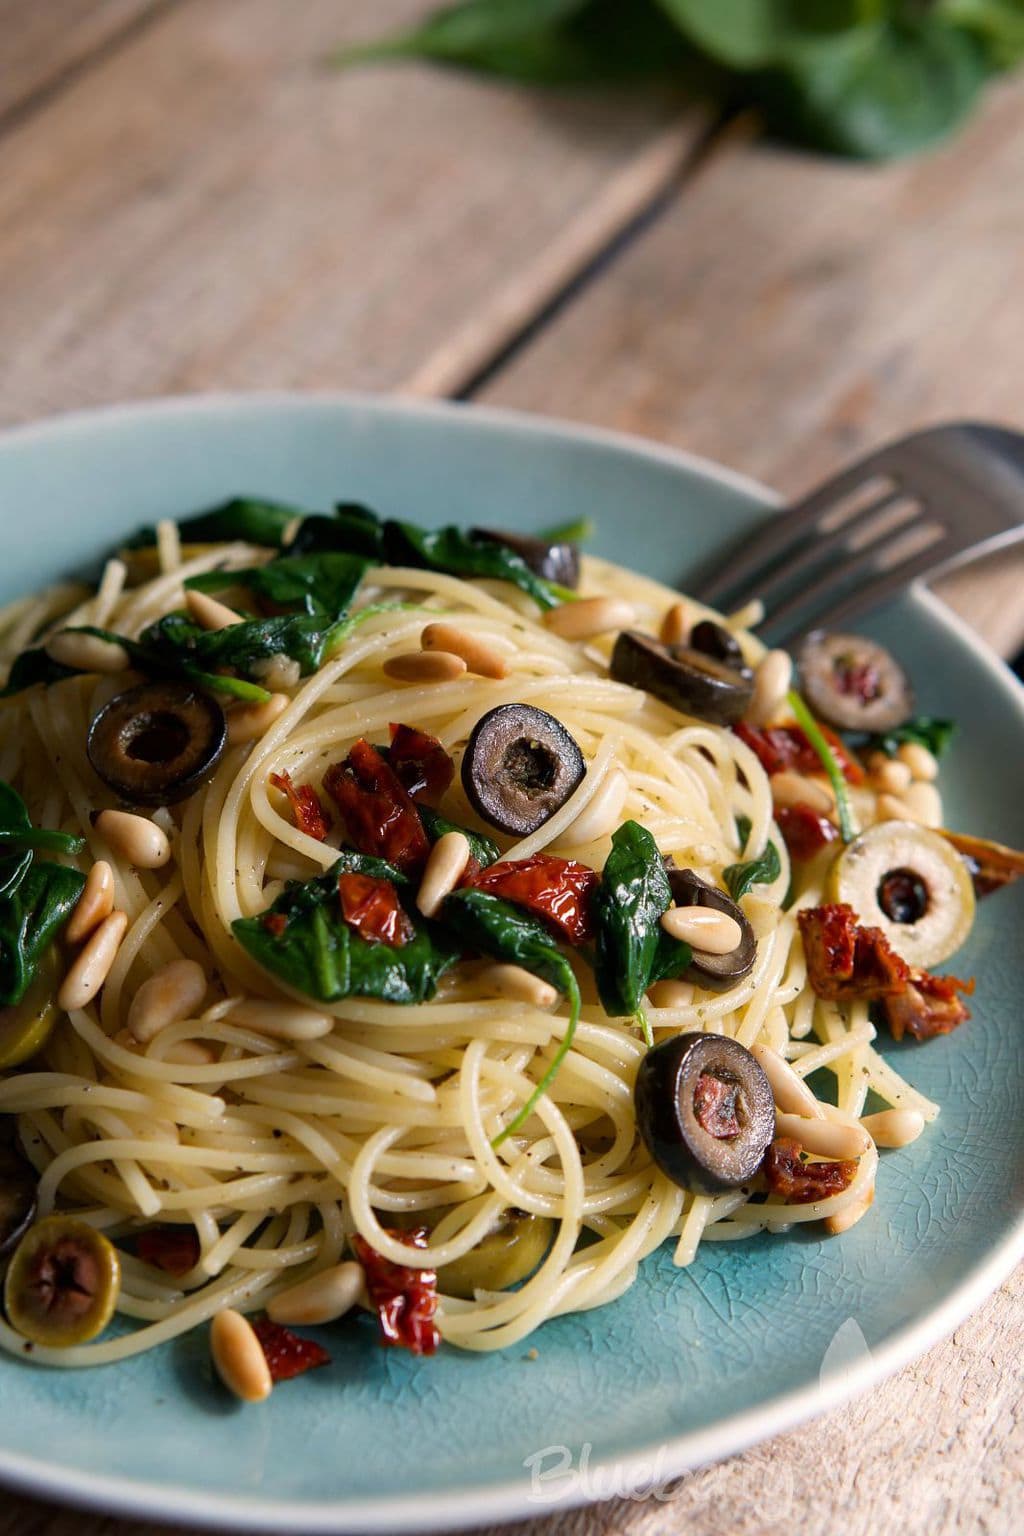 Würzige Spaghetti mit Oliven, Spinat und getrockneten Tomaten